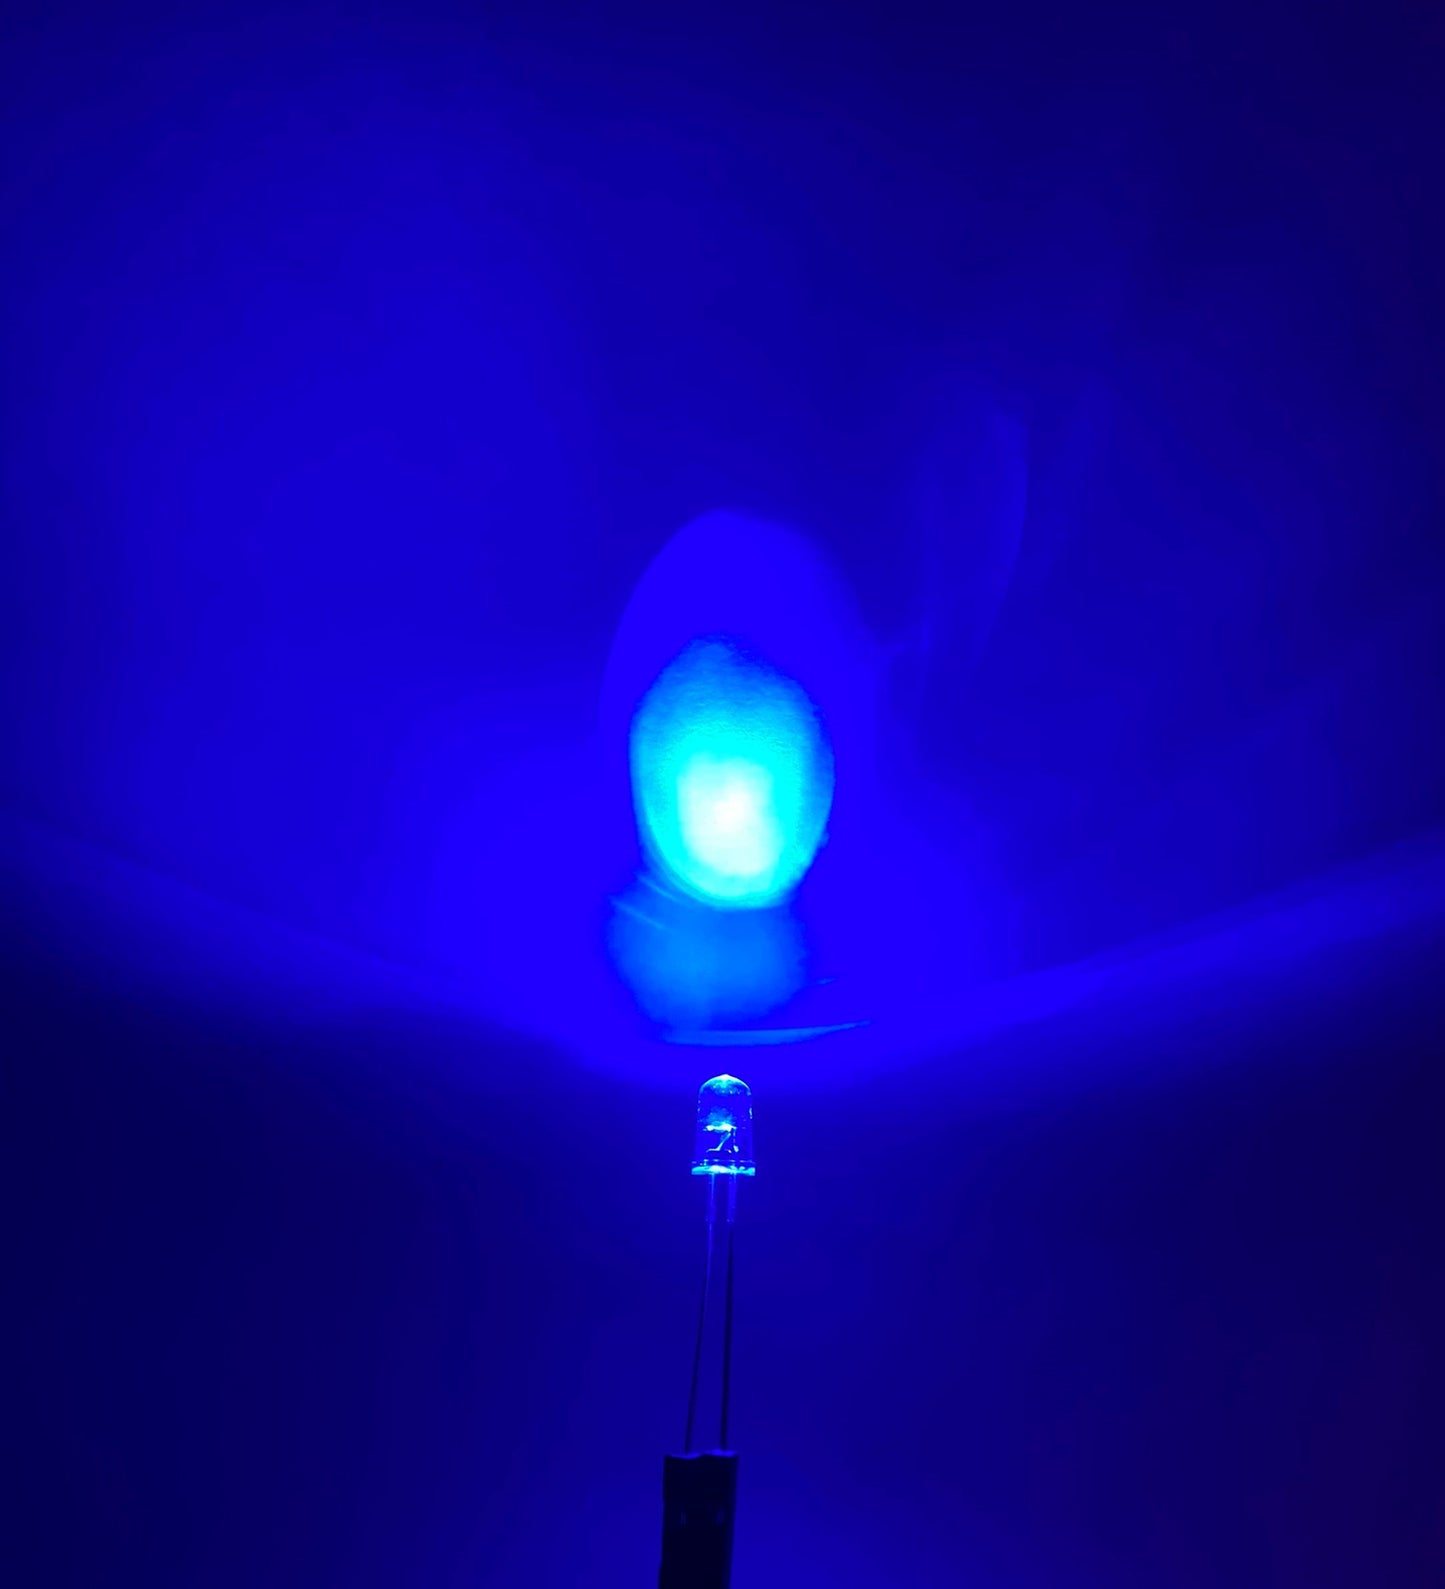 Diodo LED 5mm intermitente bicolor | Intermitente Rojo-Verde | Intermitente Rojo-Azul